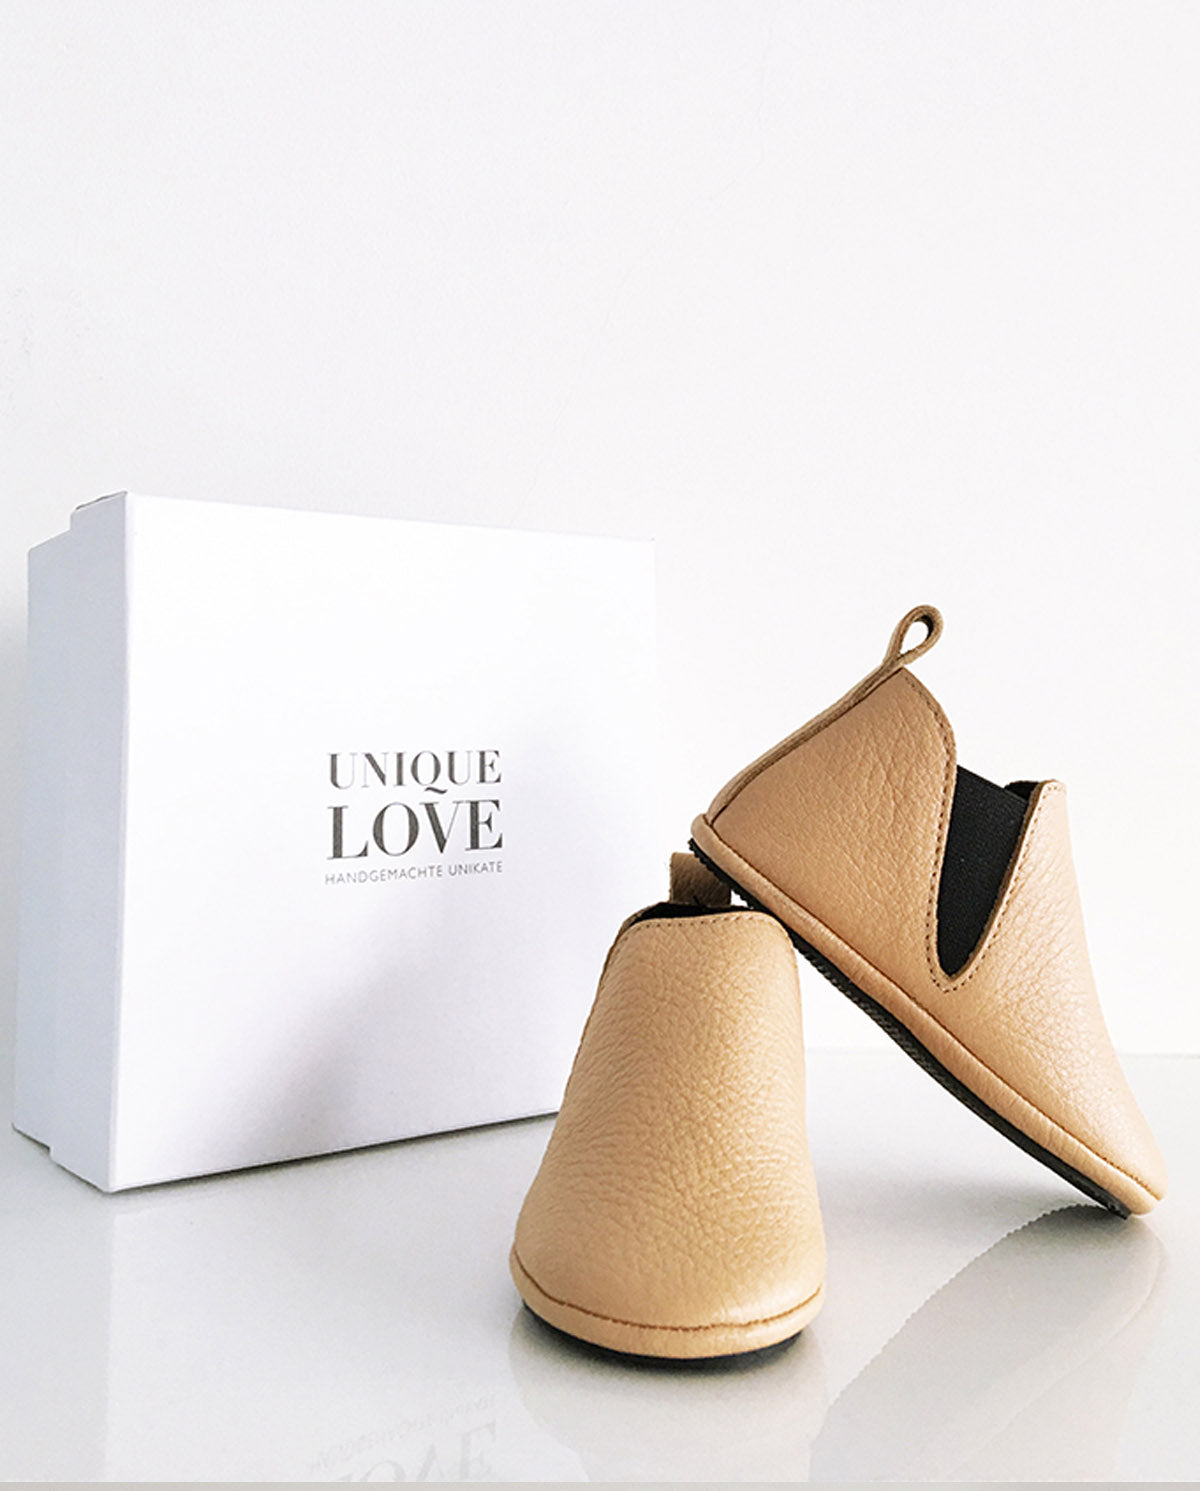 UNIQUE LOVE Bequeme und elegante Chelsea Boots - Jetzt bestellen und einen trendigen Look kreieren!